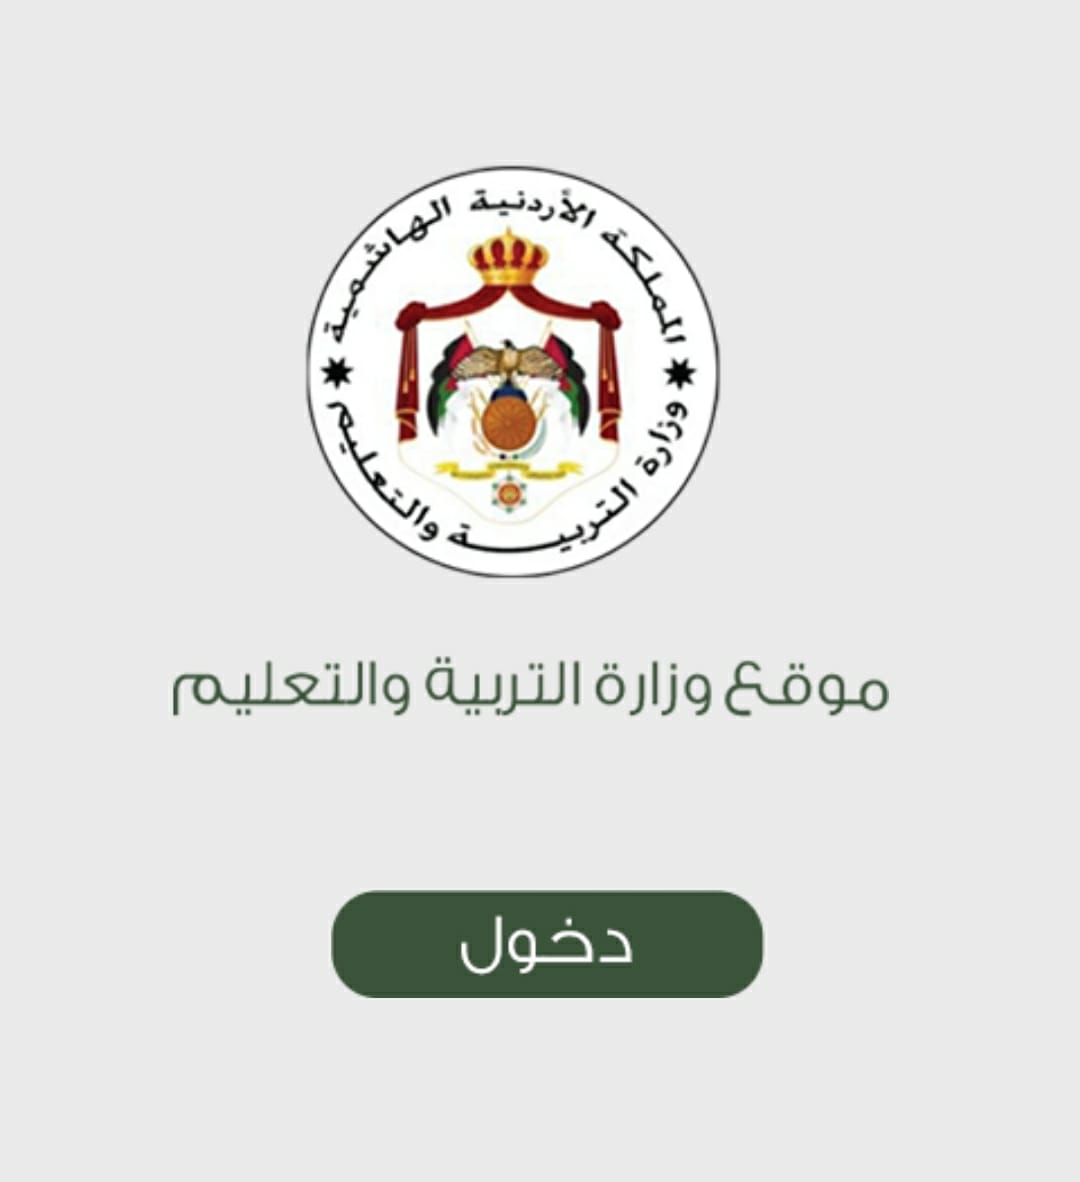 “tawjihi.jo” الآن رابط نتيجة توجيهي الاردن عبر موقع وزارة التربية والتعليم الأردنية الرسمي